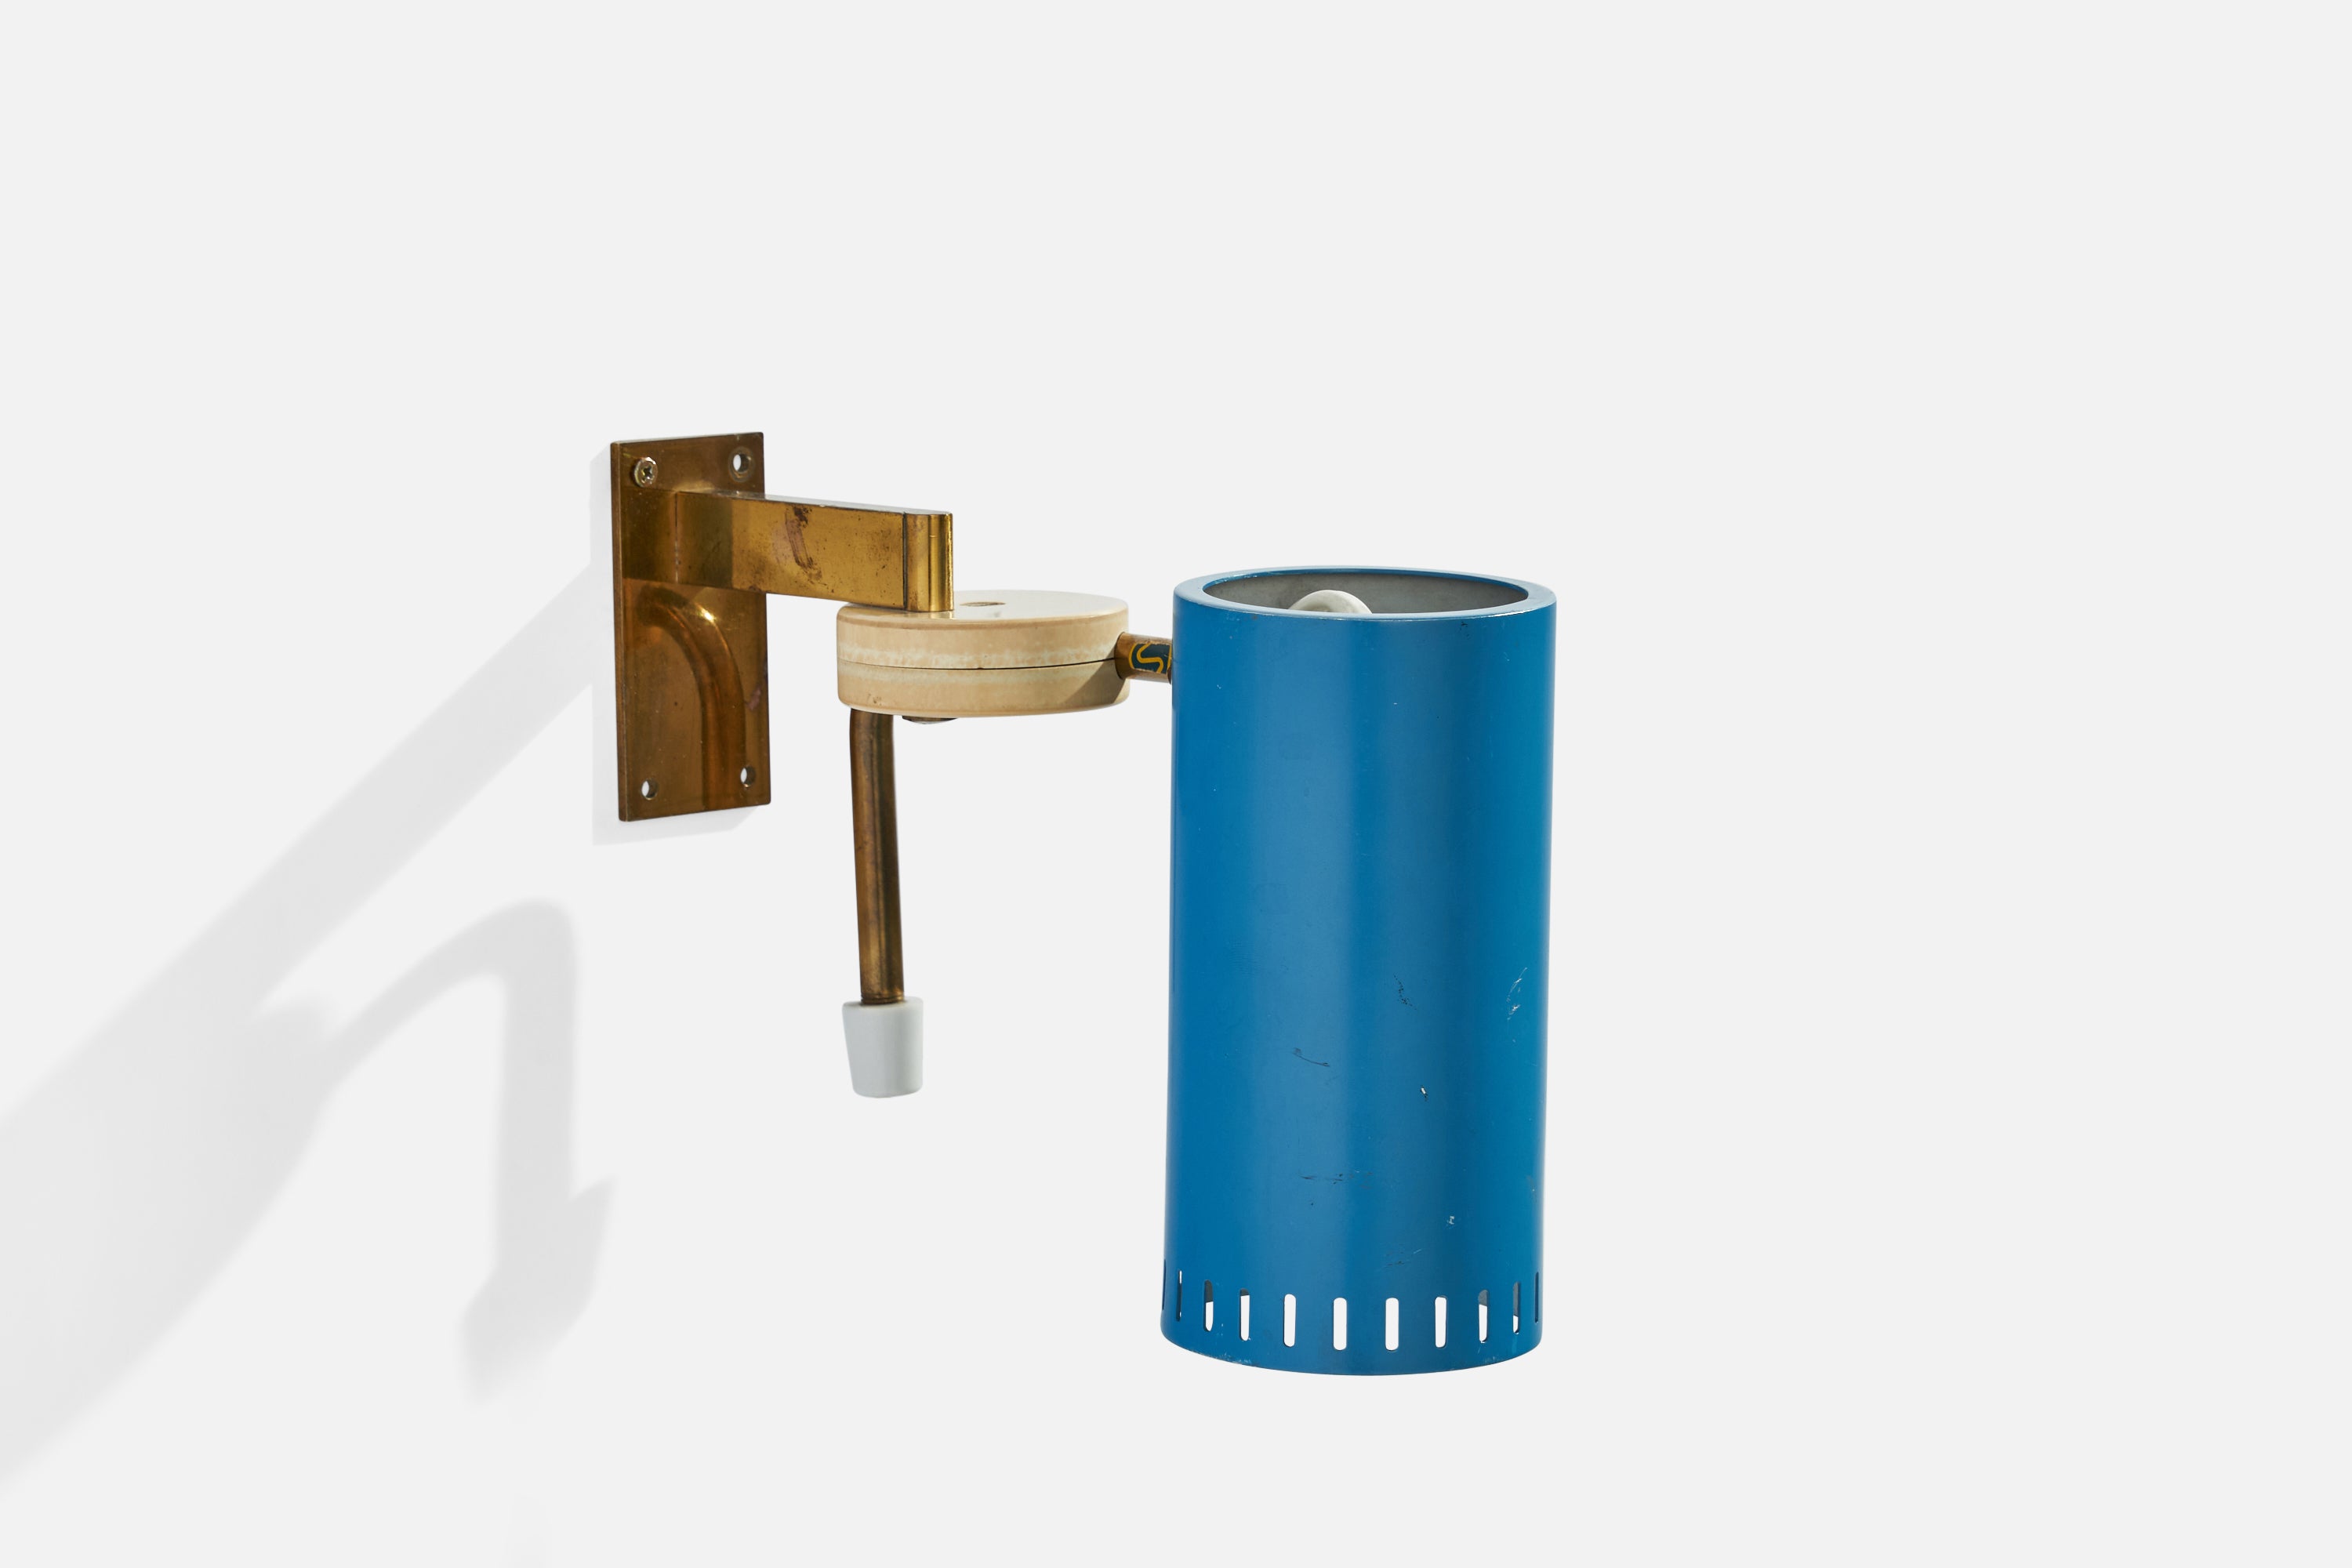 Eine Wandleuchte aus Messing, Kunststoff und blau lackiertem Metall, entworfen und hergestellt in Schweden, 1950er Jahre.

Funktioniert über eine Steckverbindung, bei der die Schnur von der Unterseite der Messingstange zugeführt